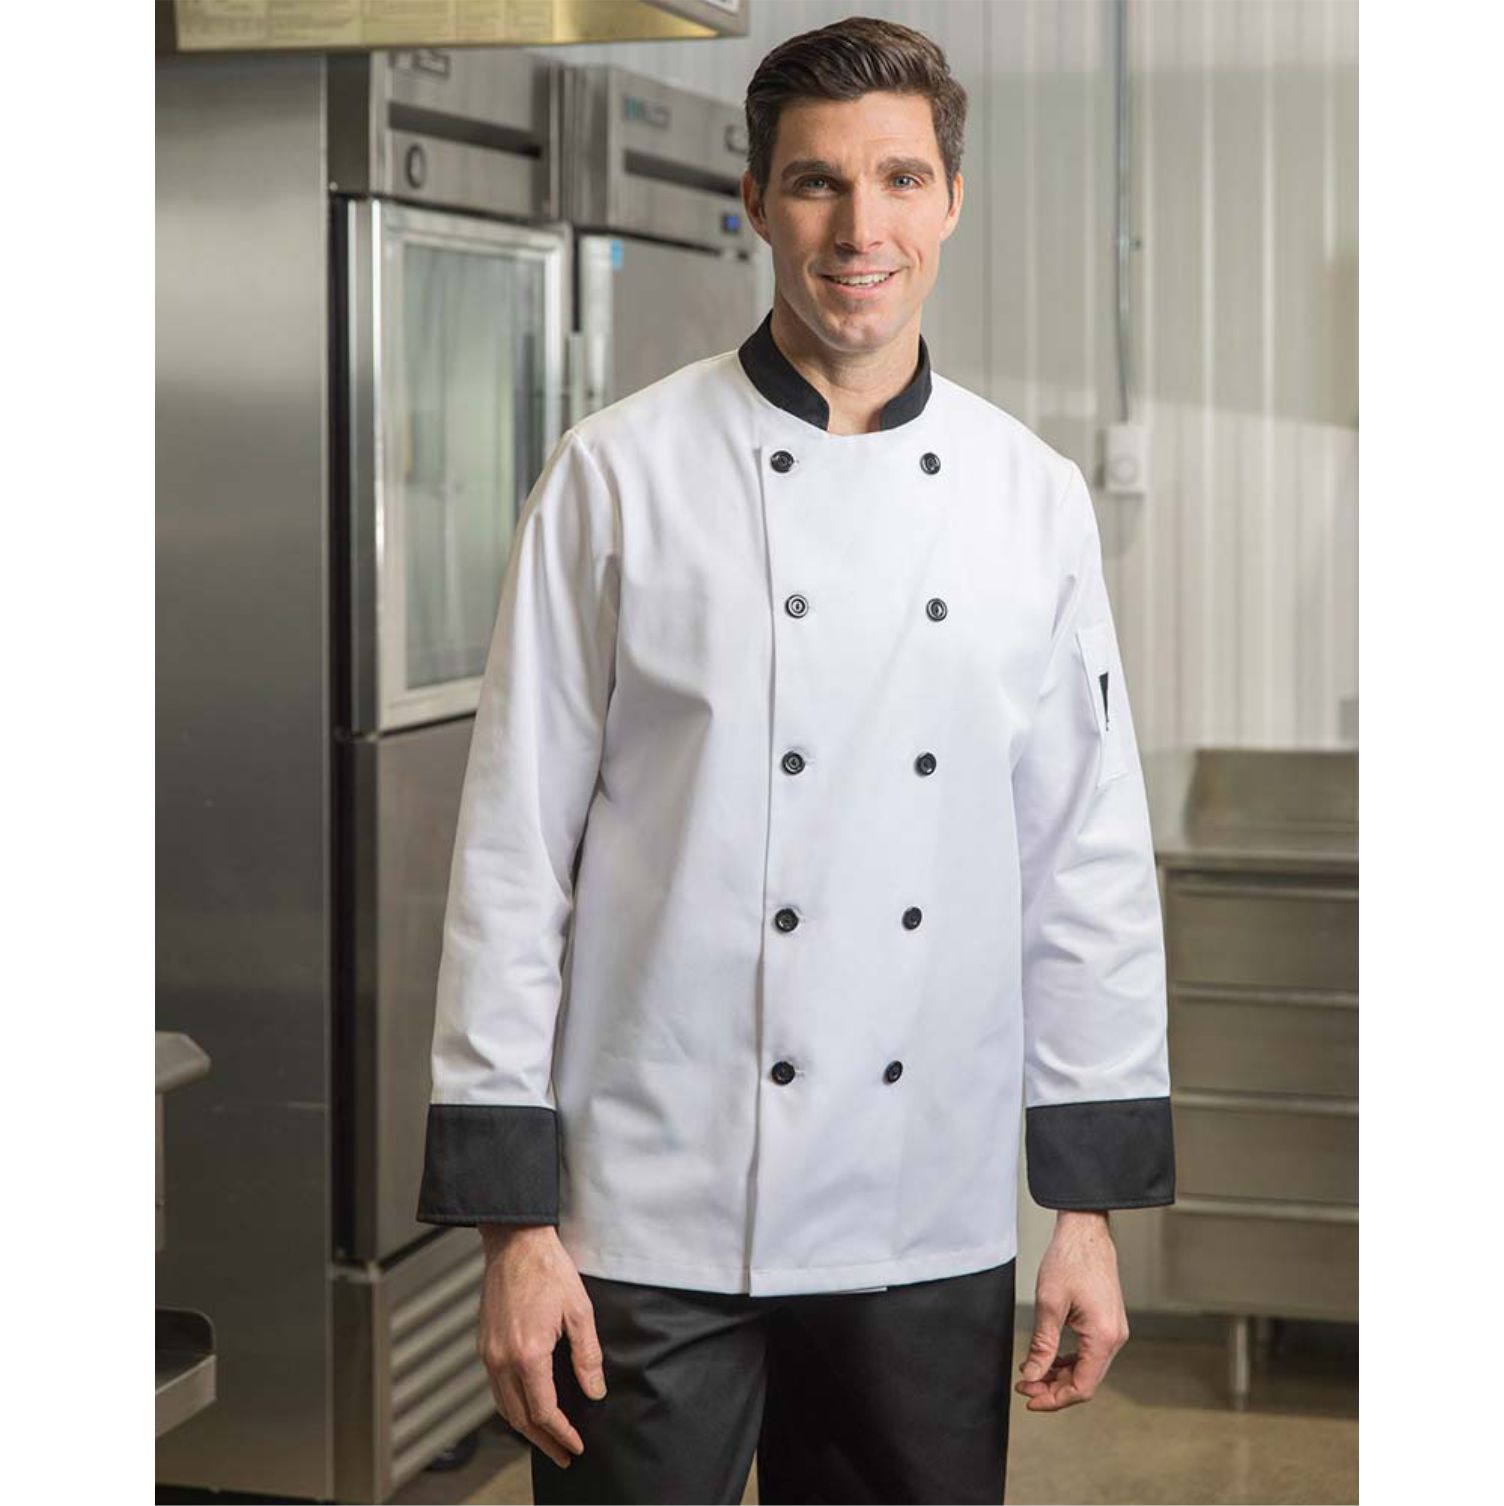 Premium Uniforms Chef Coat with Contrast Trim #5370 White with Black Trim